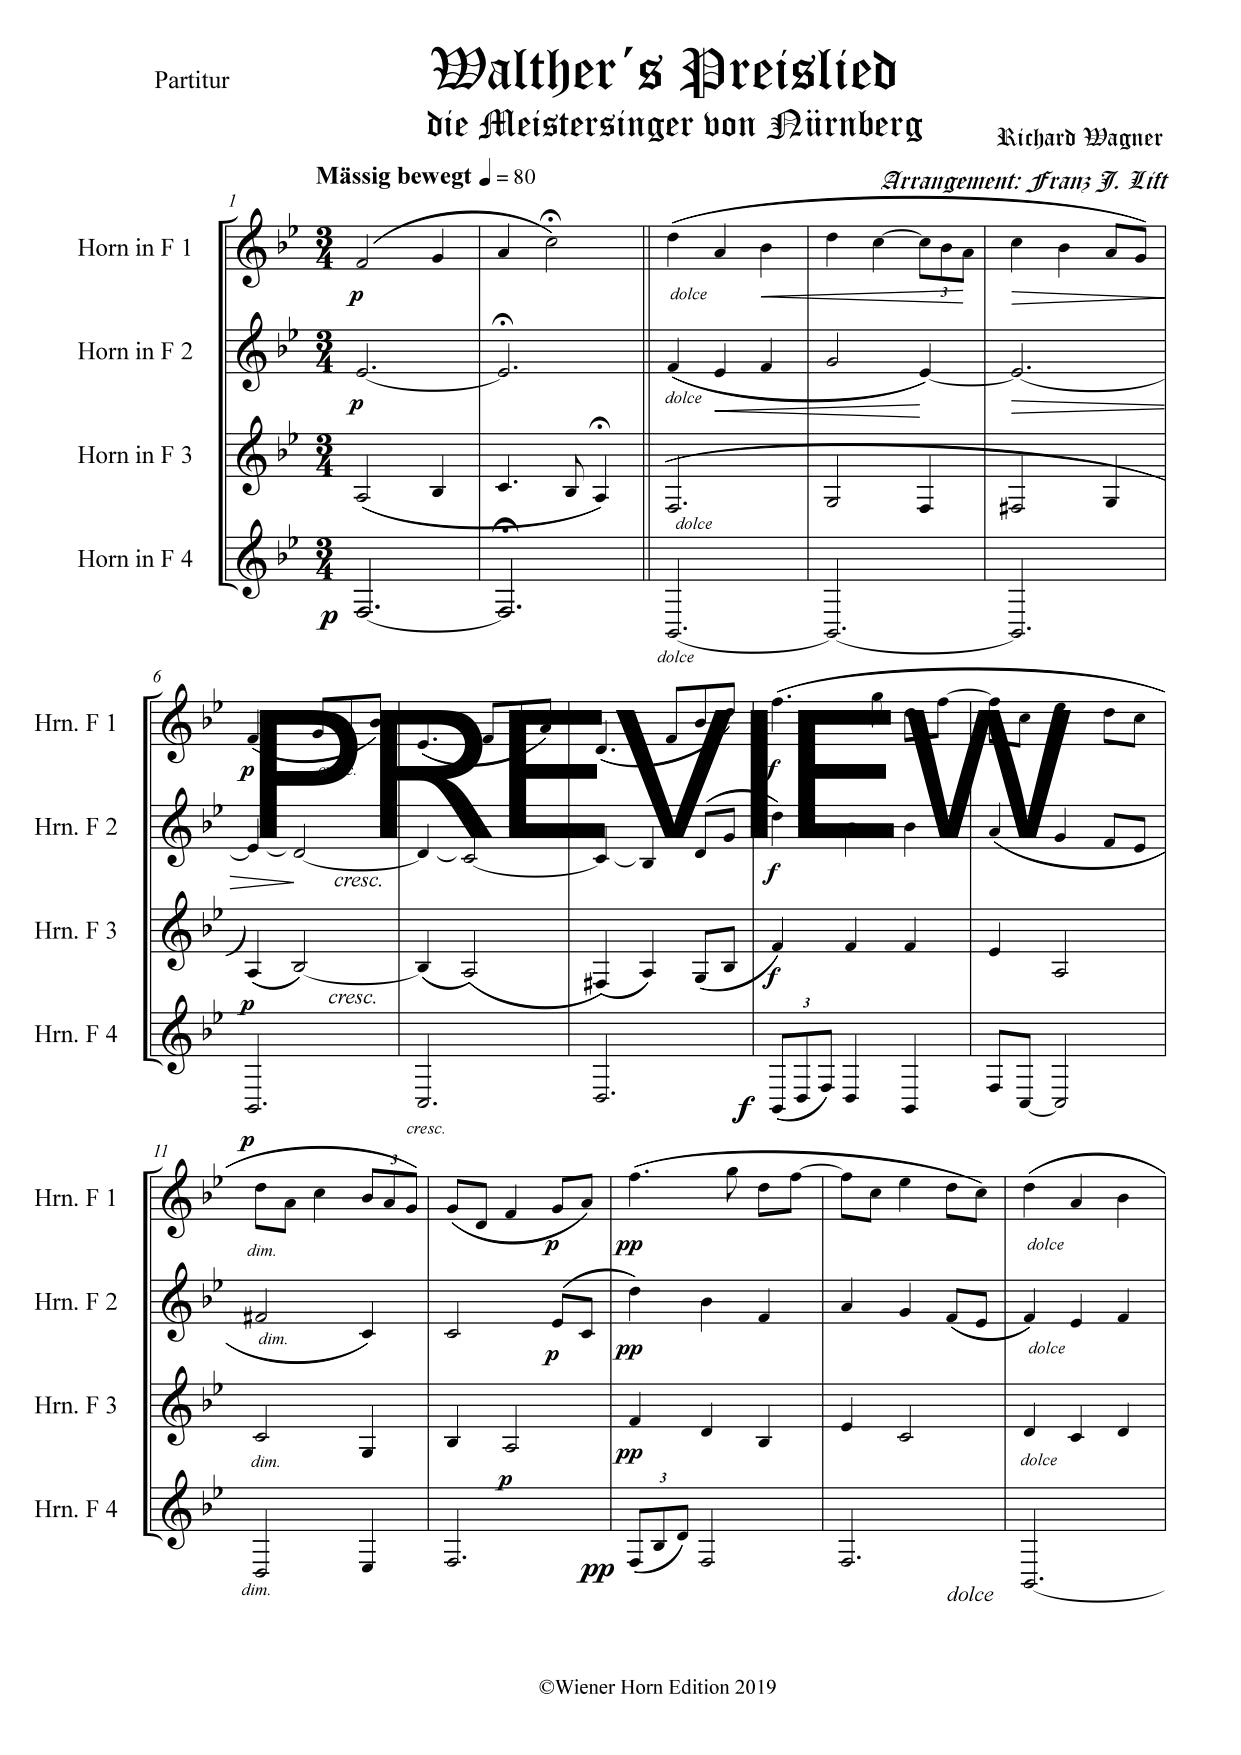 Walther´s Preislied - Franz Josef Liftl - Richard Wagner - für Horn Quartett in F - 4 WH